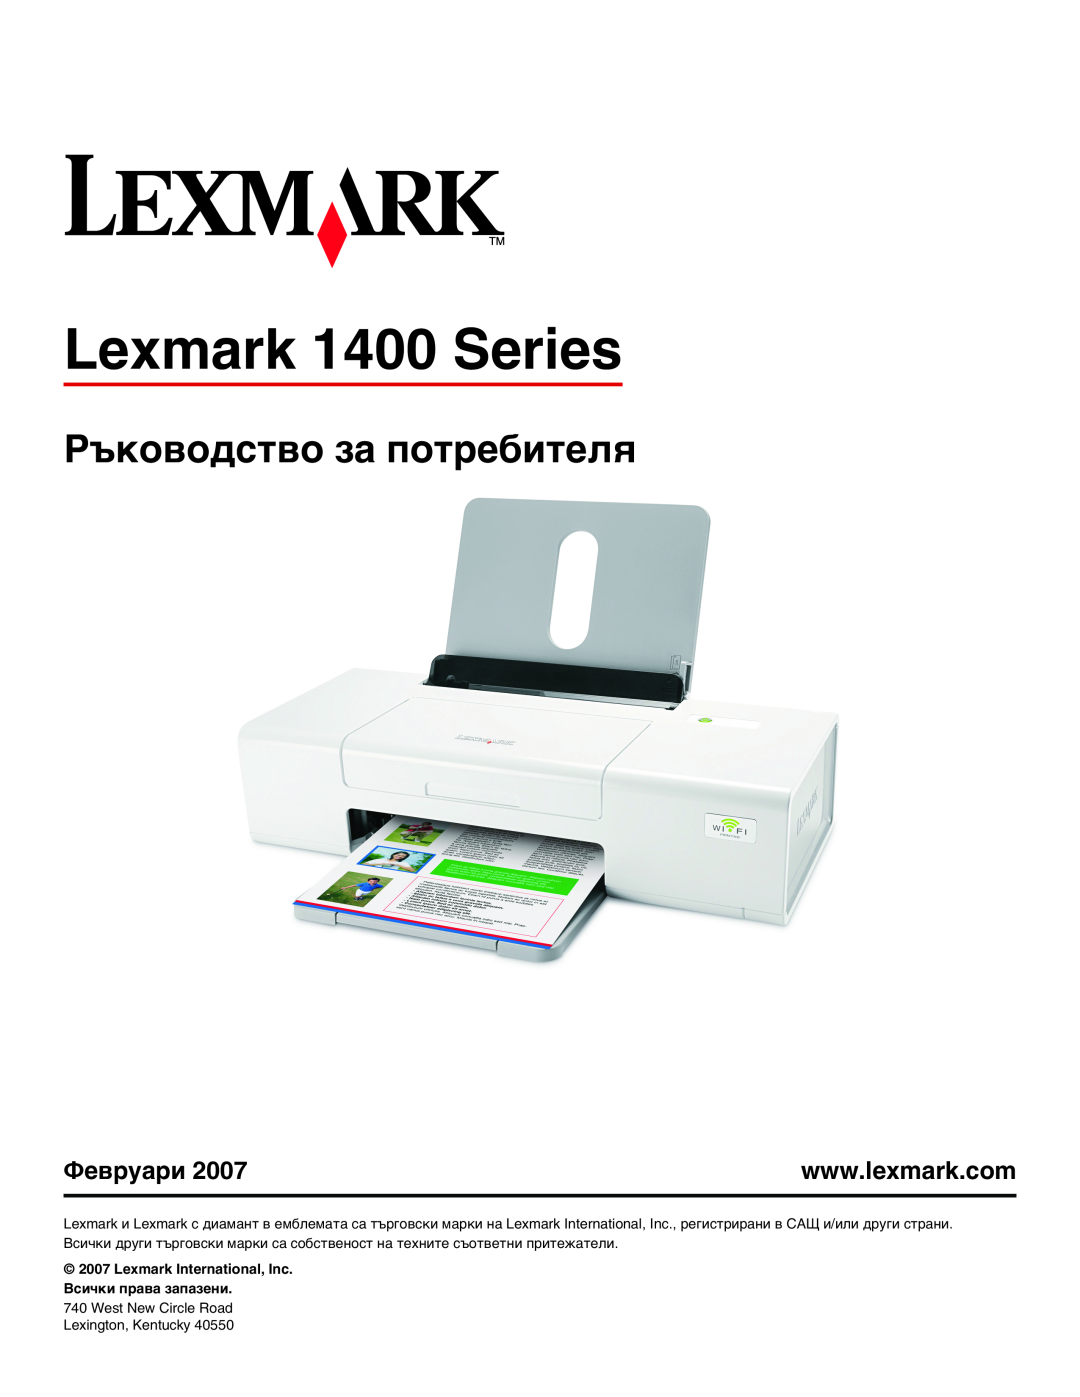 Lexmark manual Ръководство за потребителя, Lexmark 1400 Series, Lexmark International, Inc. Всички права запазени 